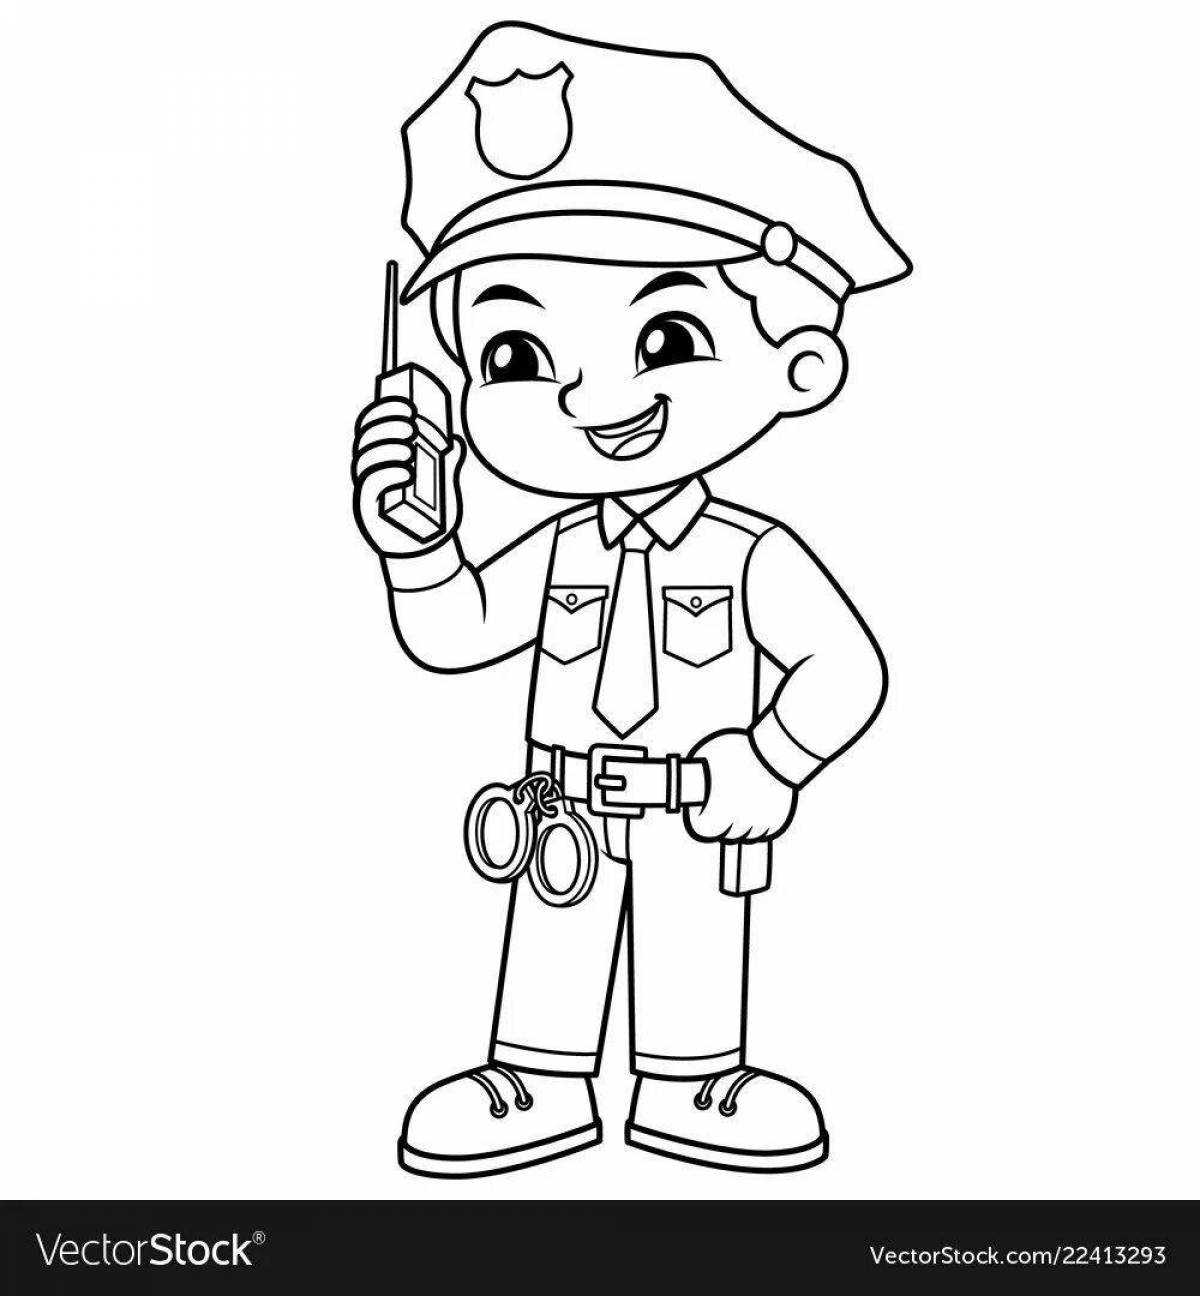 Cop adorable baby coloring page